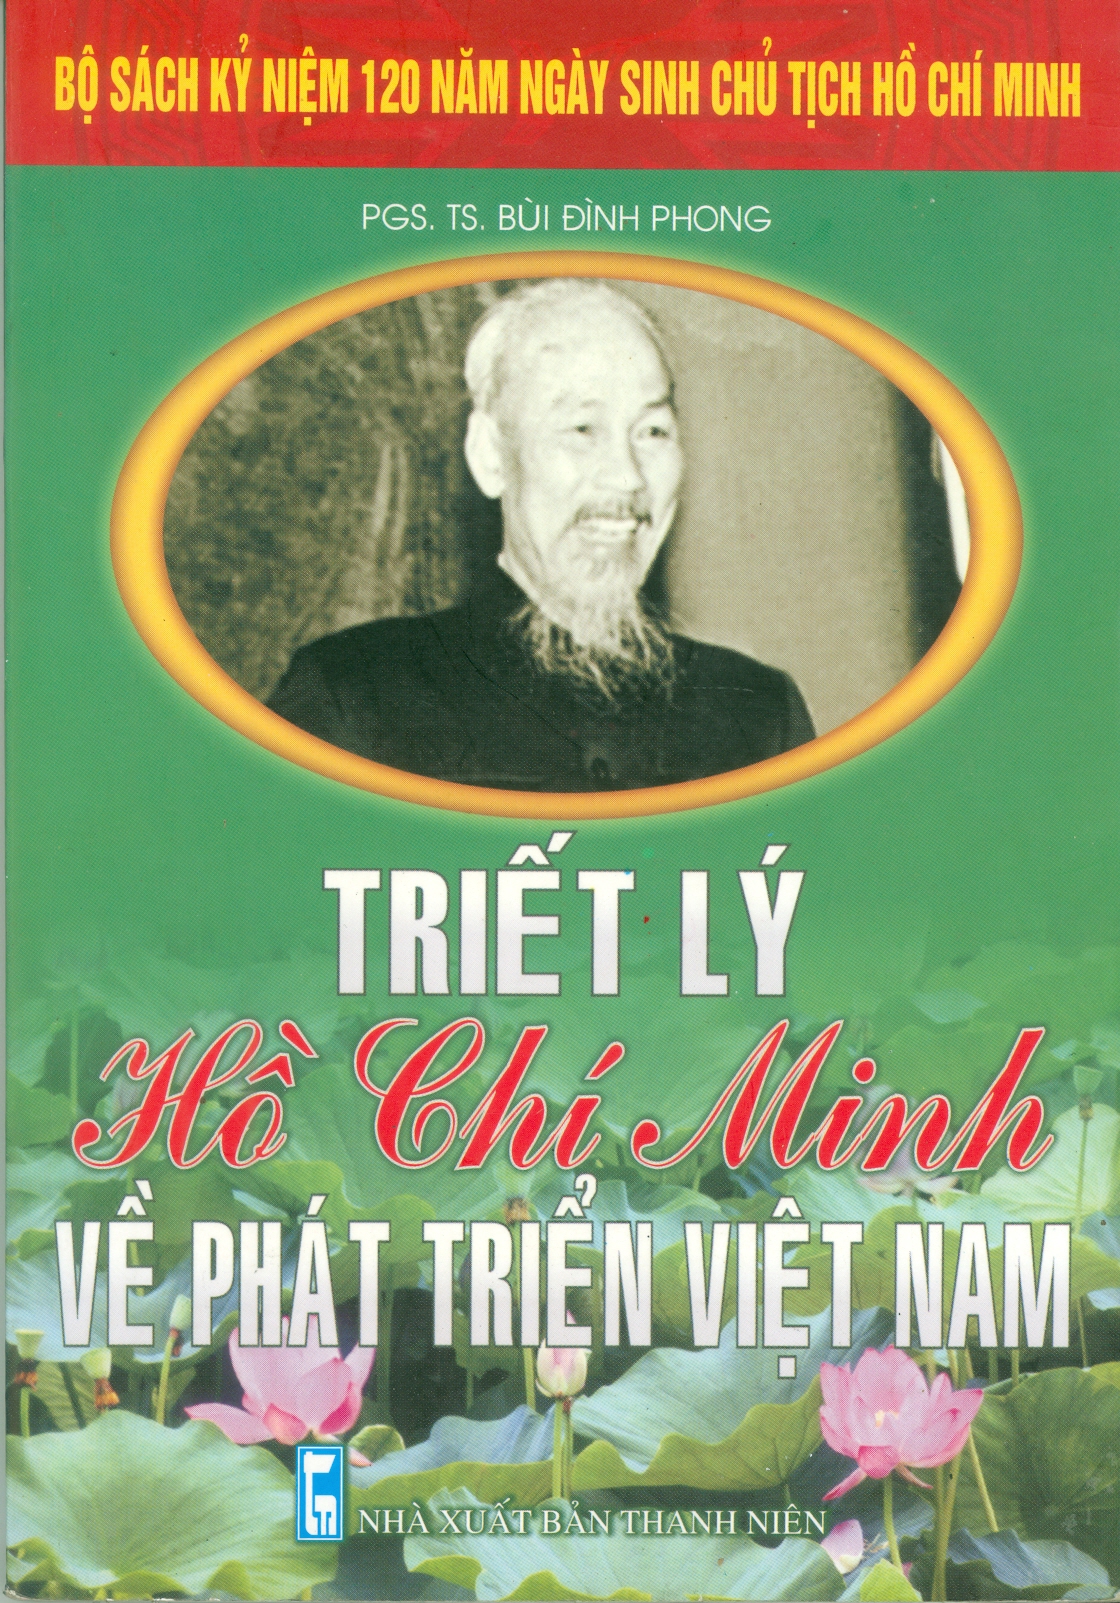 Triết lý Hồ Chí Minh về phát triển Việt Nam